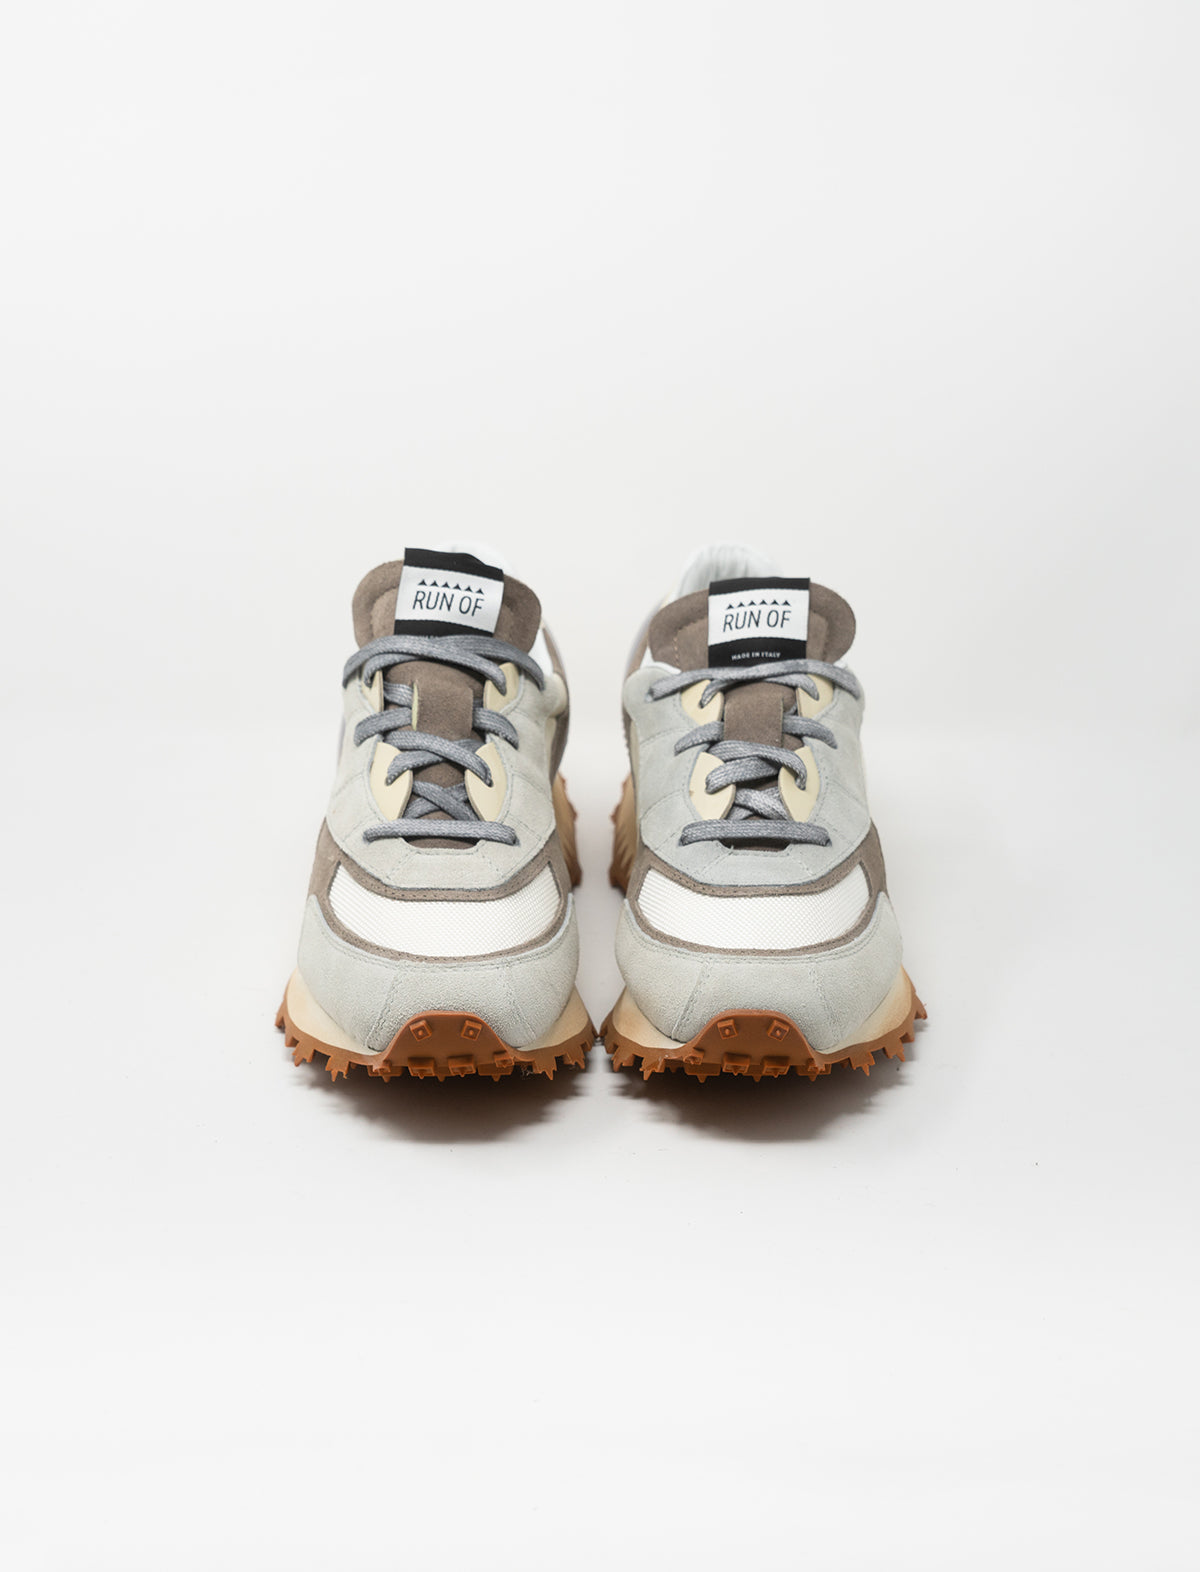 RUN OF Filler Sneakers in Grey and Brown Multi